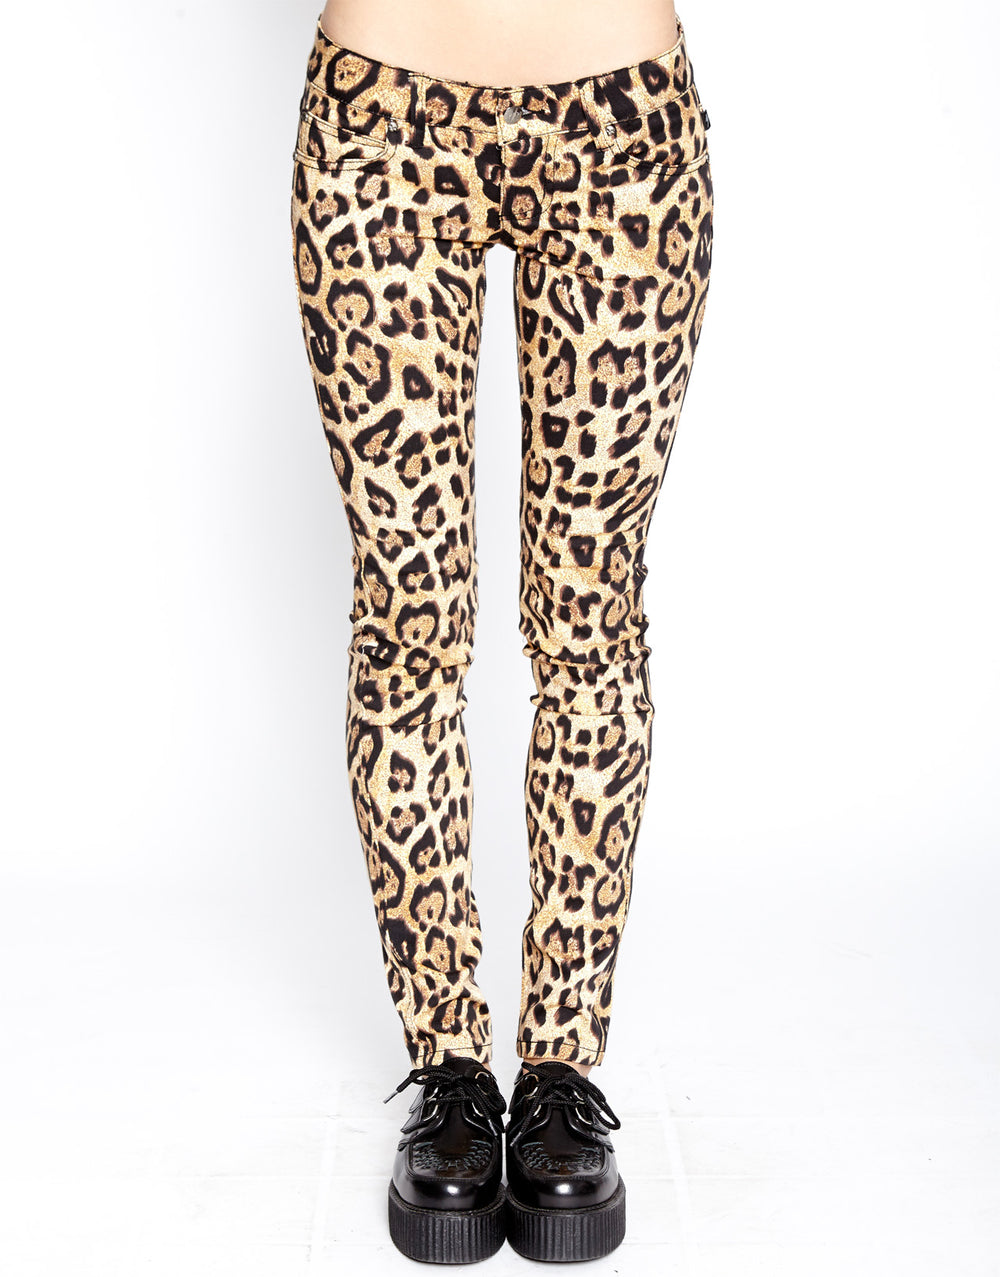 Leopard Print Pants, Women's Kitty Pants